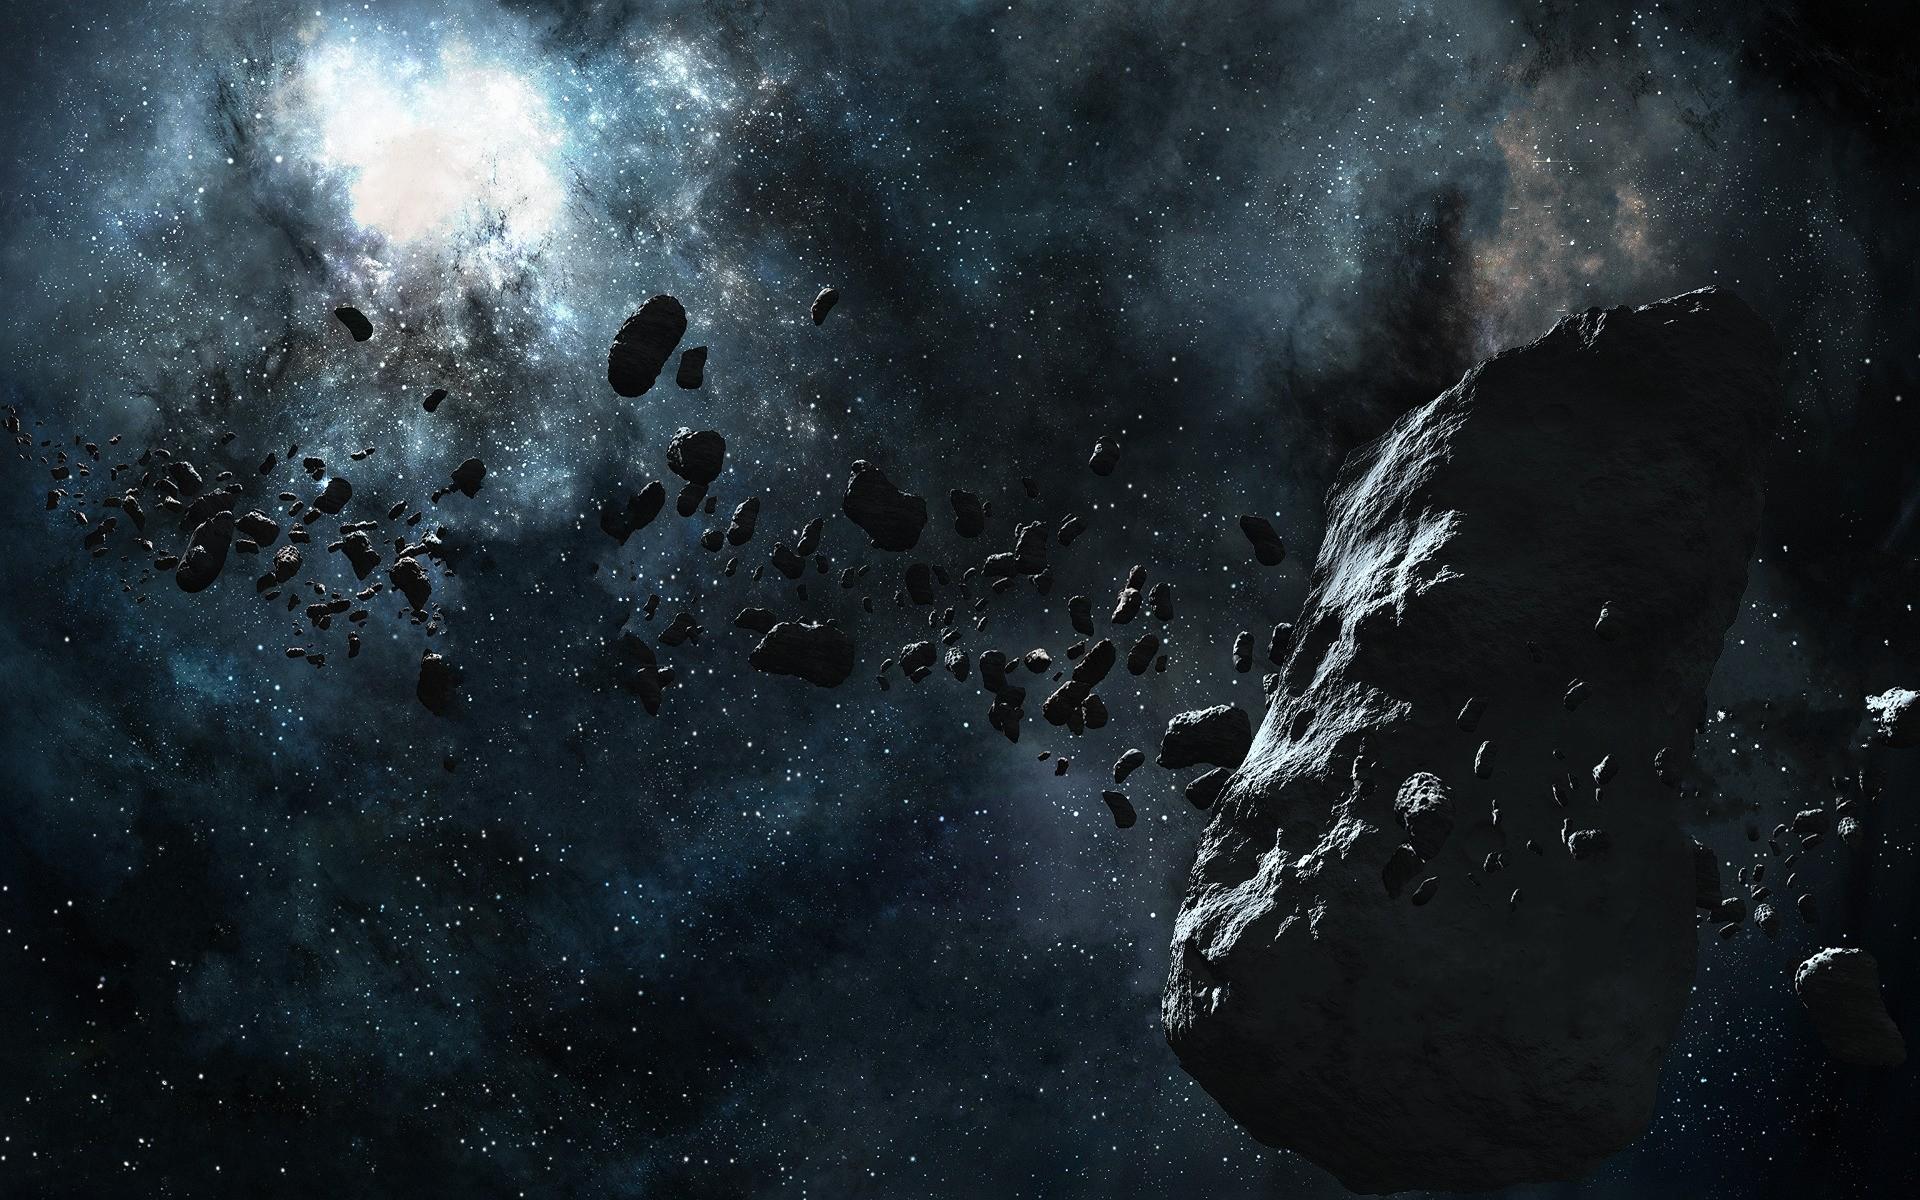 کمربند سنگی سیارکی در یک قاب Full HD مناسب پست